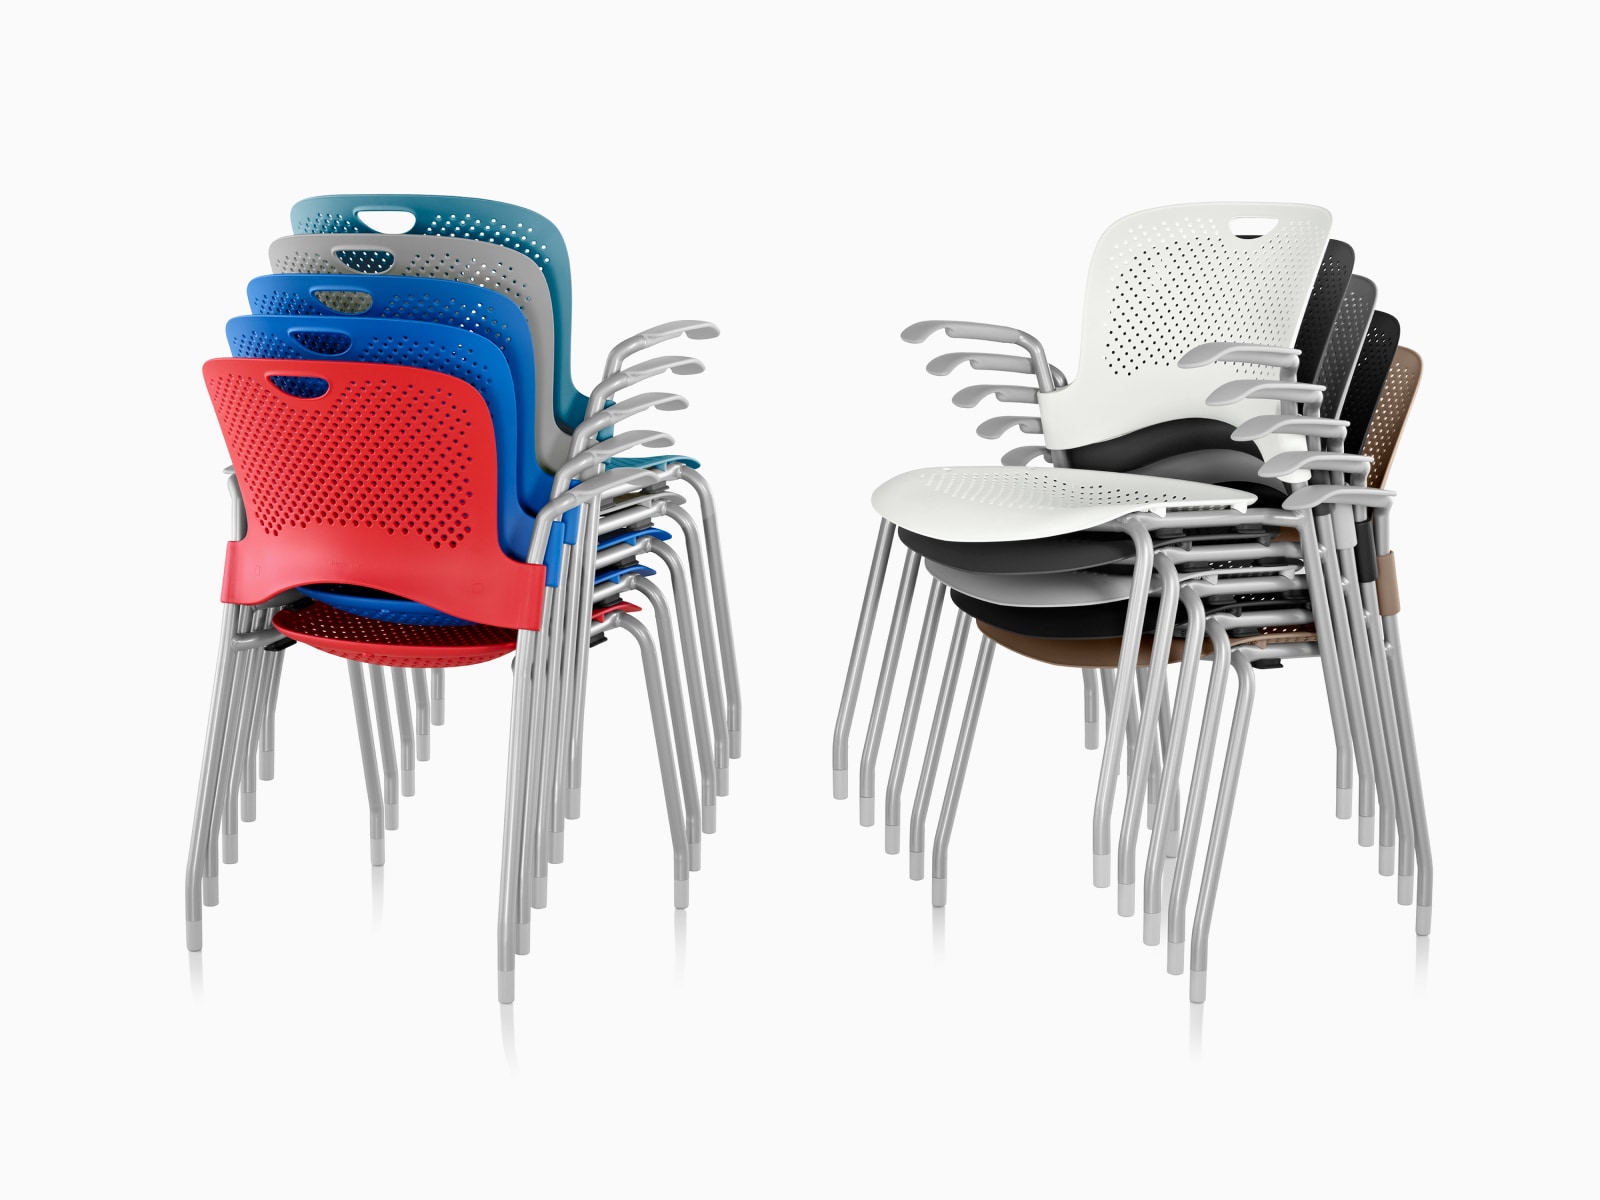 两套不同颜色的 Caper 堆叠座椅，均堆叠成五层高。